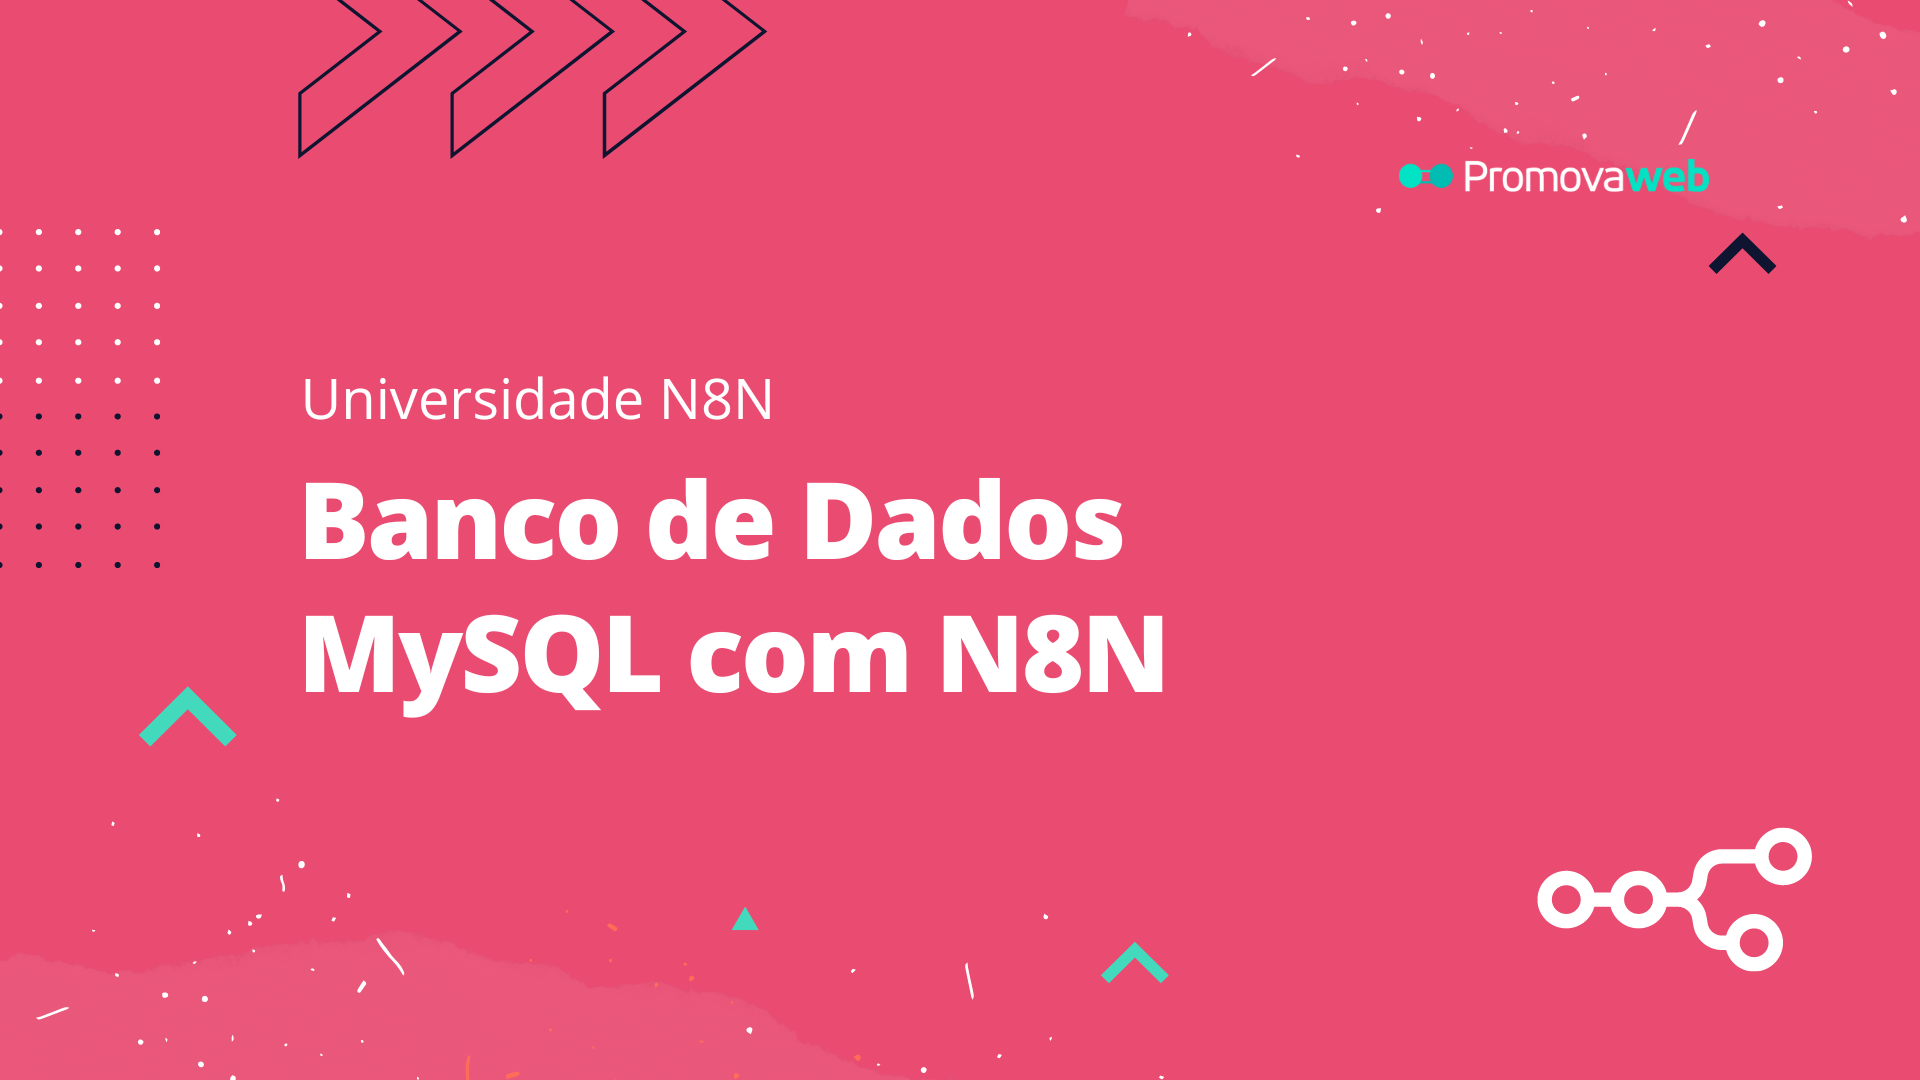 Banco de Dados MySQL com N8N